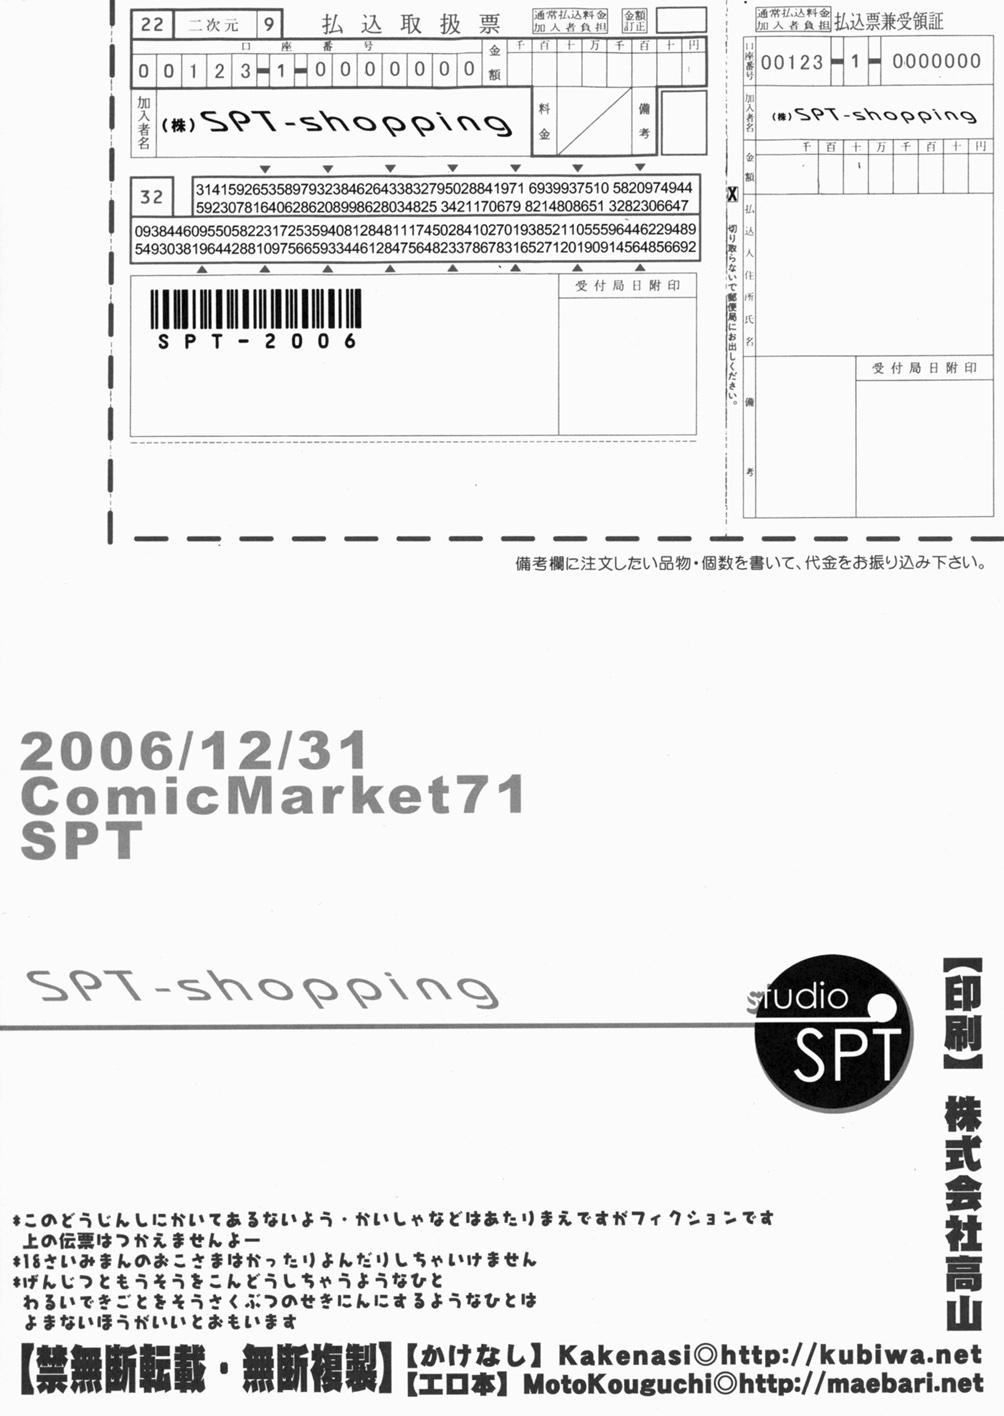 Shoujyo Tsuuhan Catalogue Vol. 1 2006 Winter Collection 28